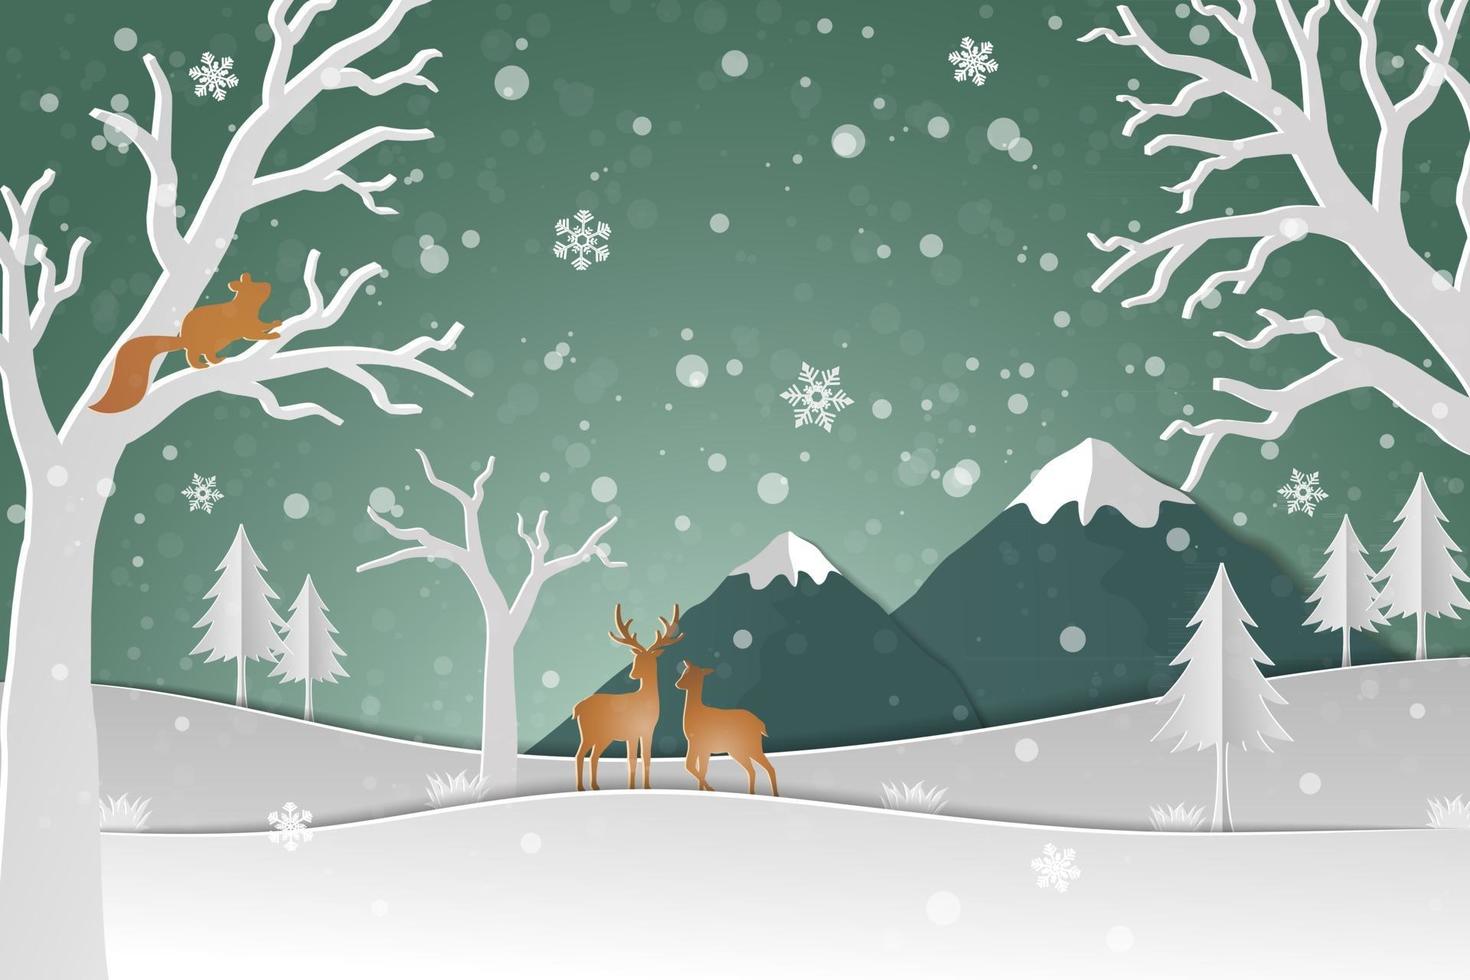 Hirschfamilie mit Winterschnee im Wald abstrakten Hintergrund frohes neues Jahr und frohe Weihnachten auf Papierkunststil vektor